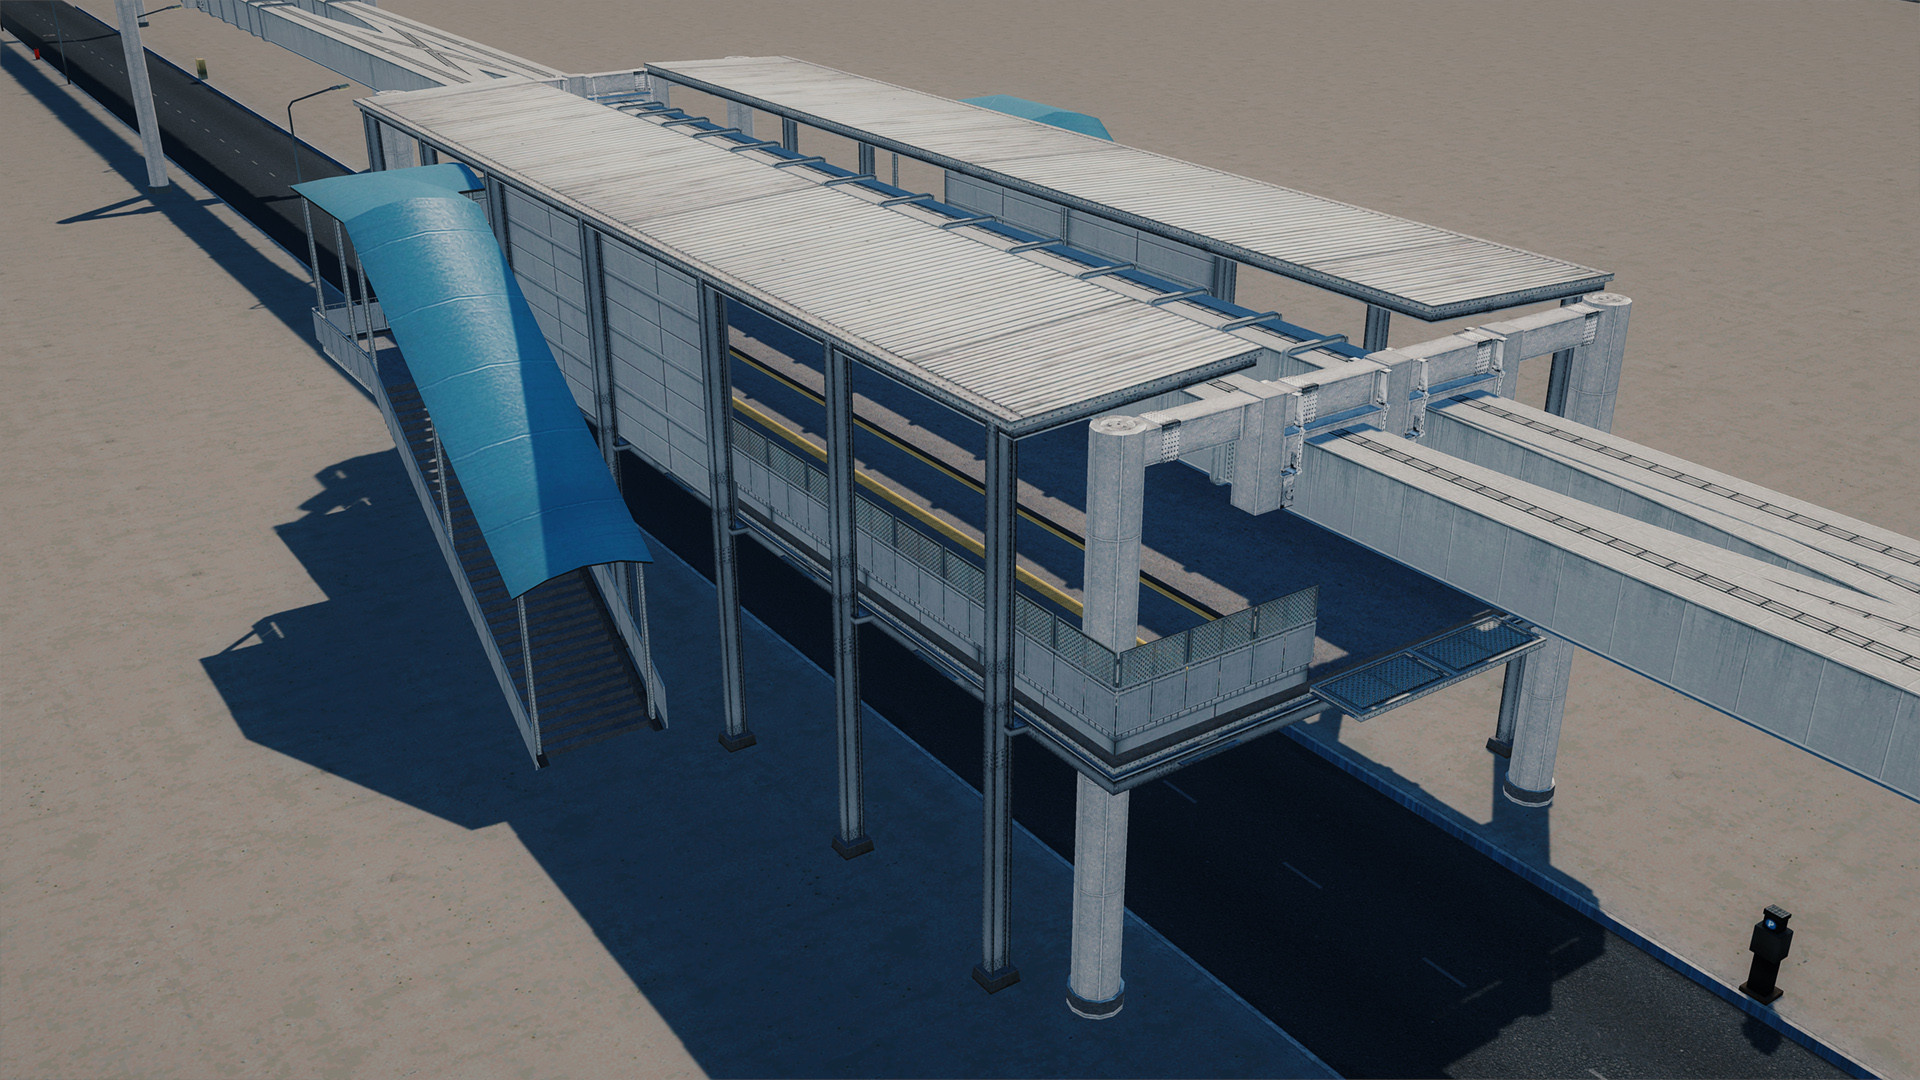 シティーズ スカイライン Suspended Monorail Station シンプルなモノレール駅 Mod